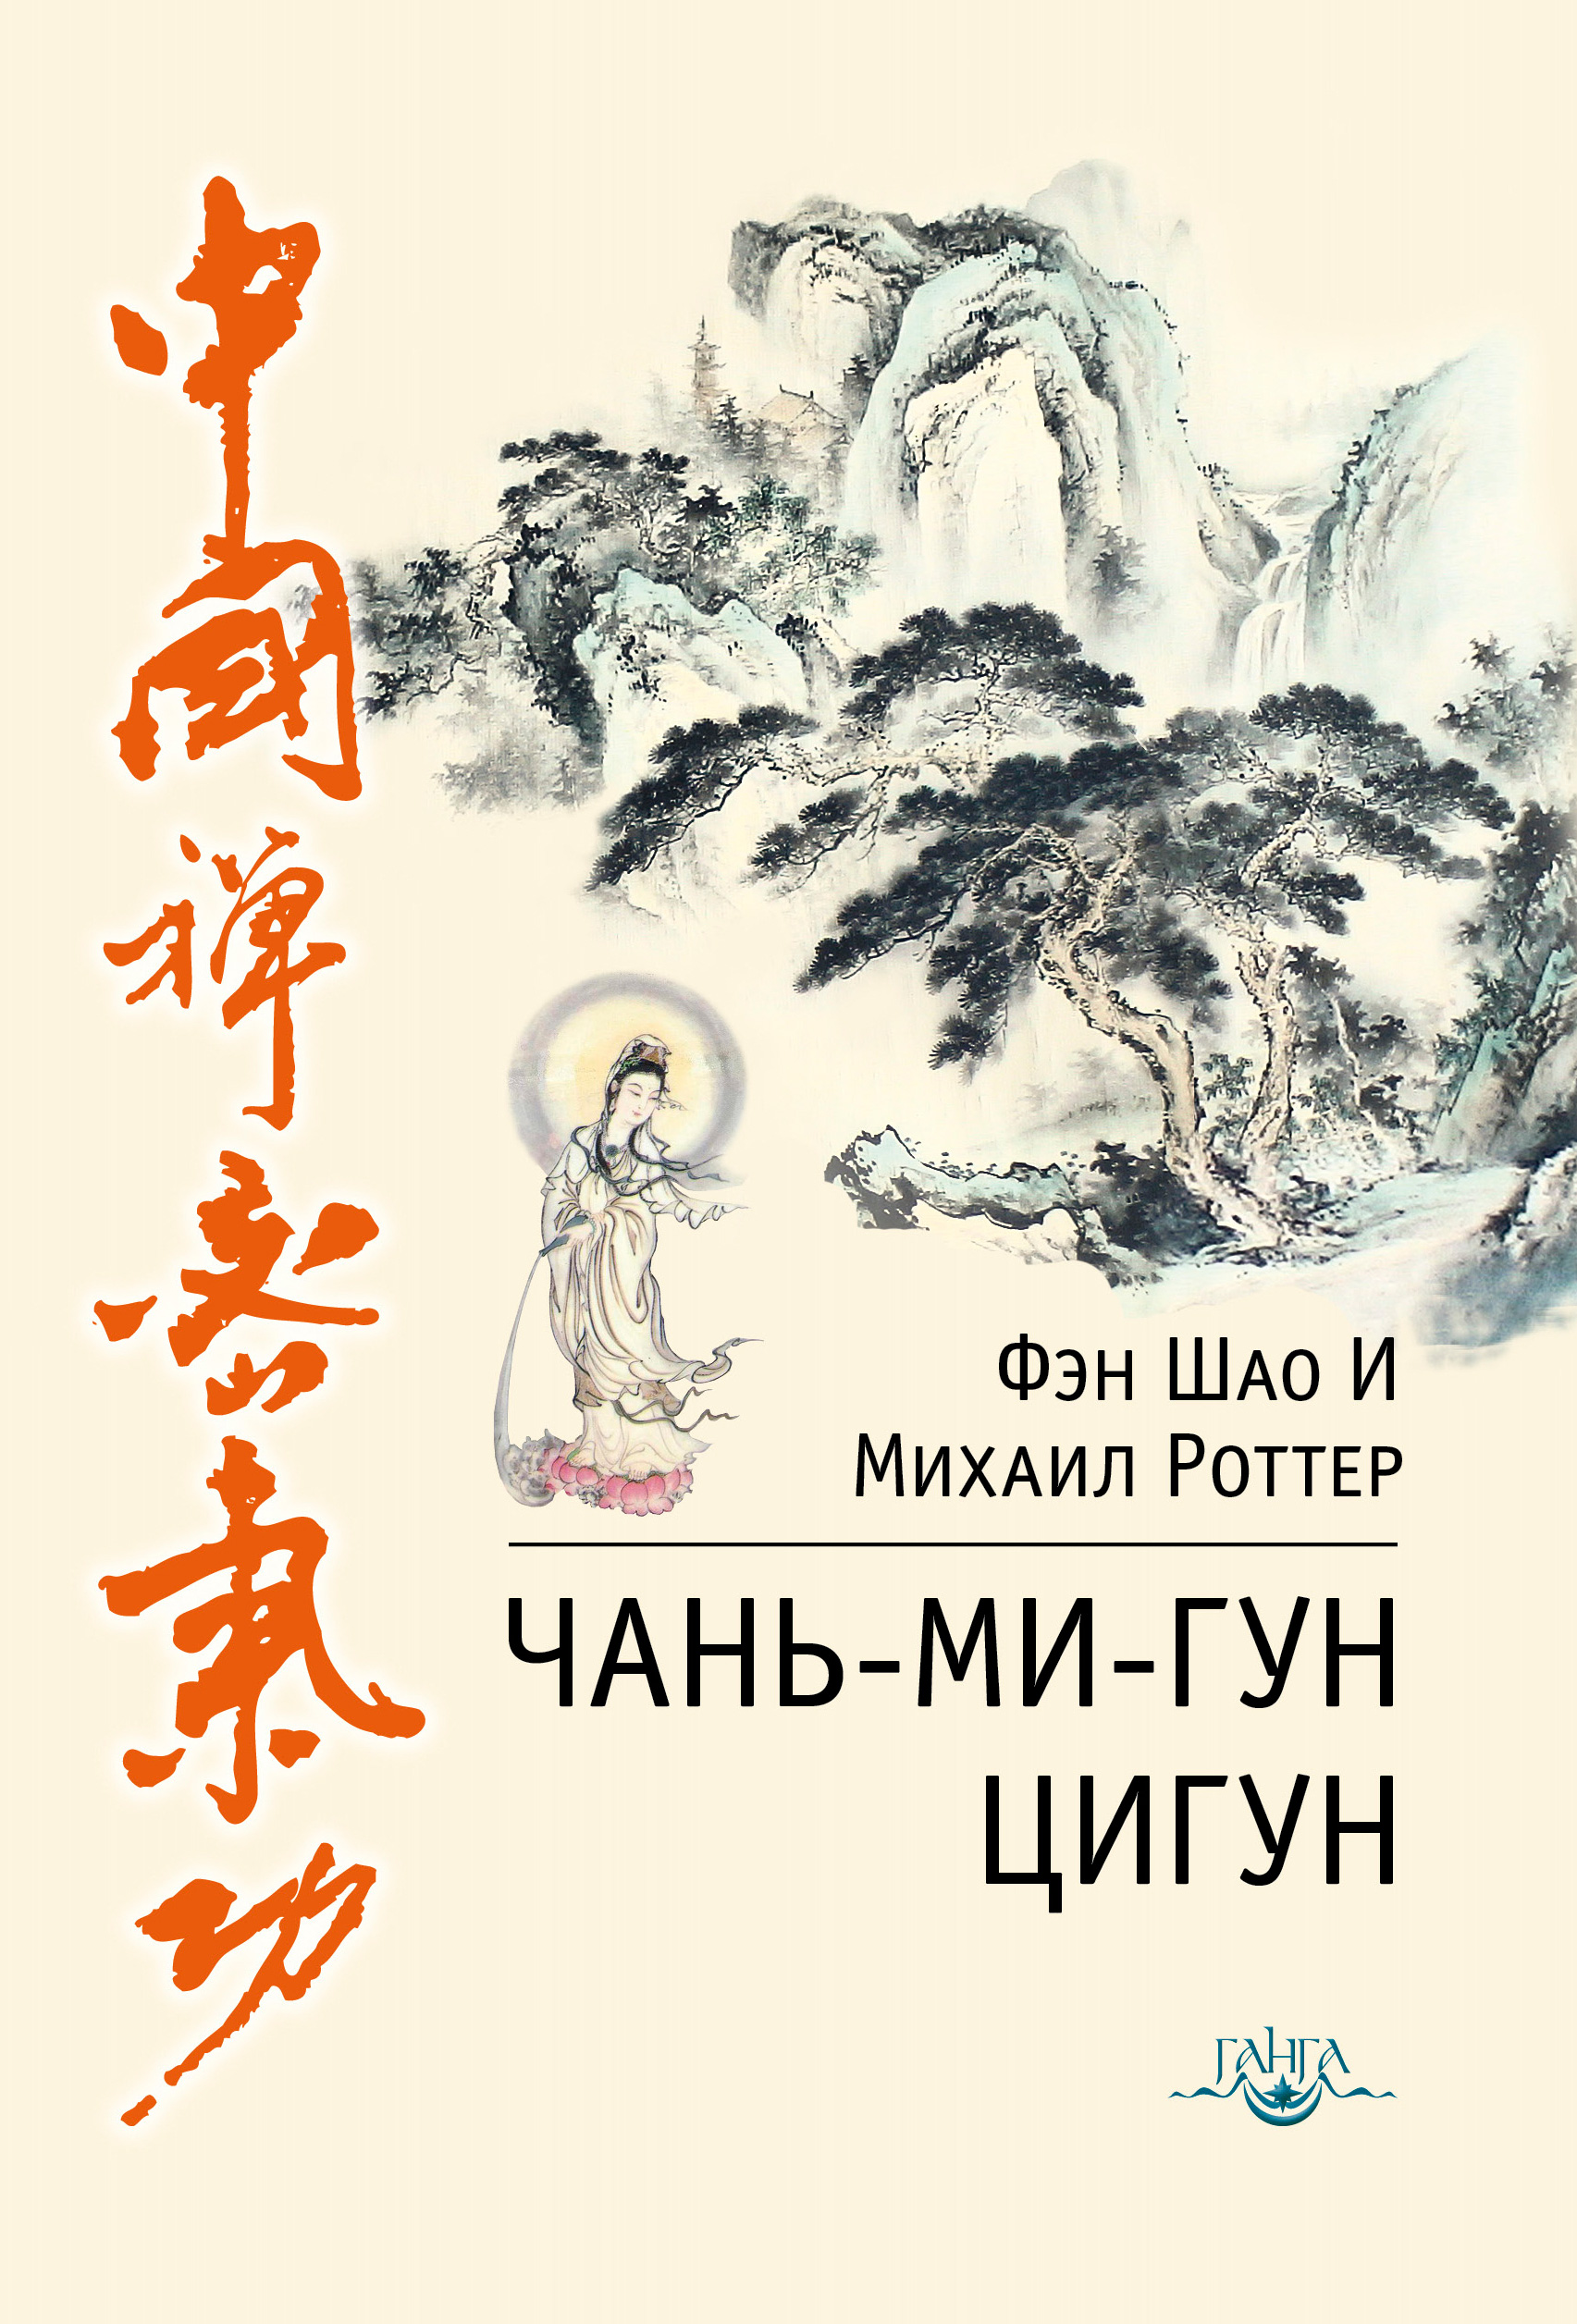 Книга Чань-Ми-Гун Цигун из серии , созданная Михаил Роттер, Фэн И, может относится к жанру Эзотерика, Здоровье. Стоимость электронной книги Чань-Ми-Гун Цигун с идентификатором 24123972 составляет 200.00 руб.